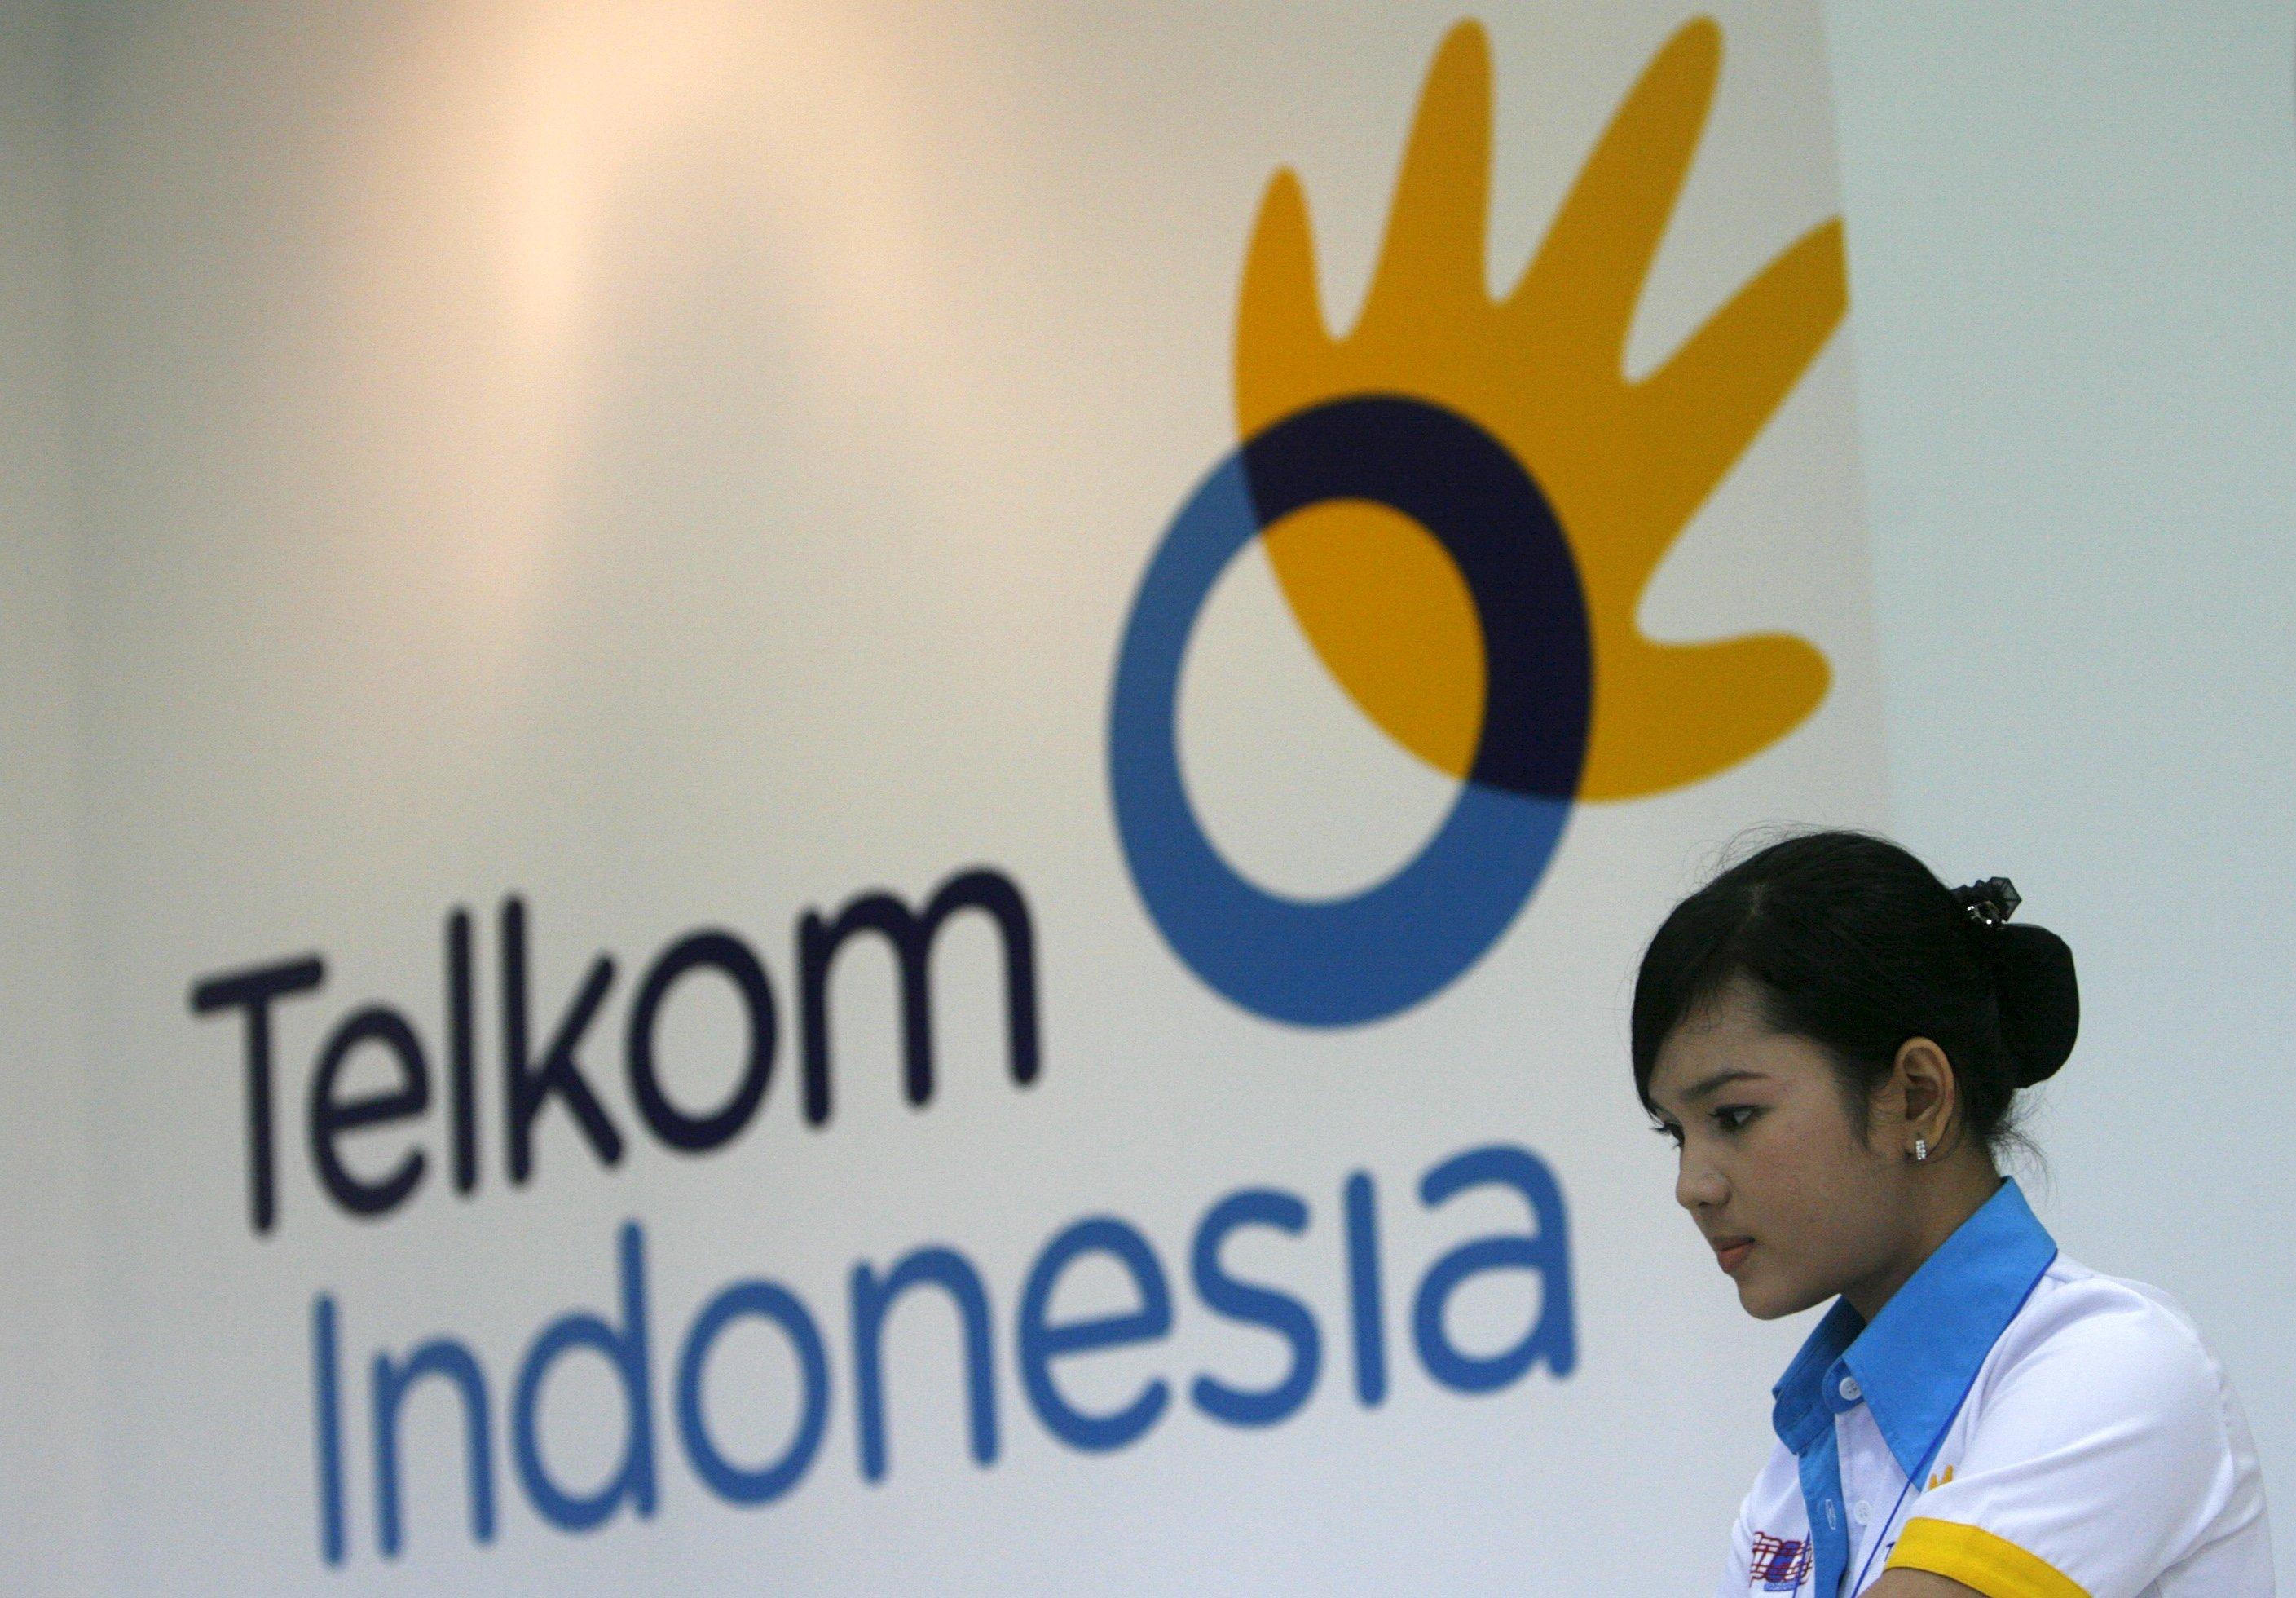 Semen Indonesia dan Telkom Siap Bagi Dividen 50-60 Persen dari Laba Bersih